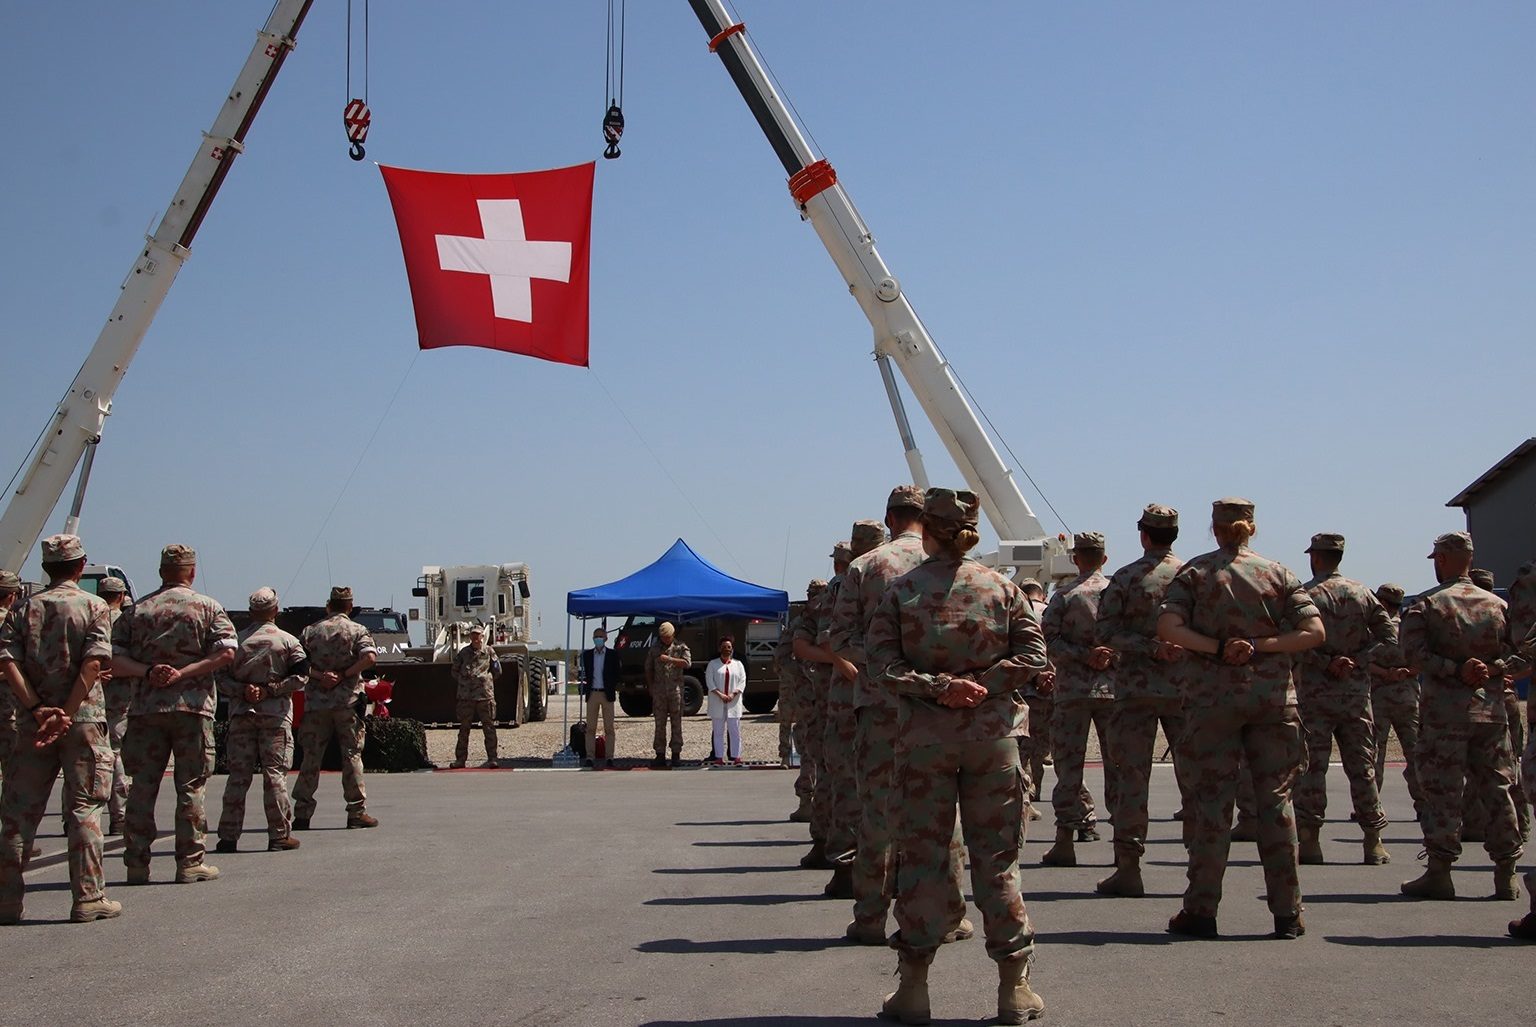 Des militaires debout de dos avec un drapeau de la Suisse suspendu dans les airs grâce à des grues